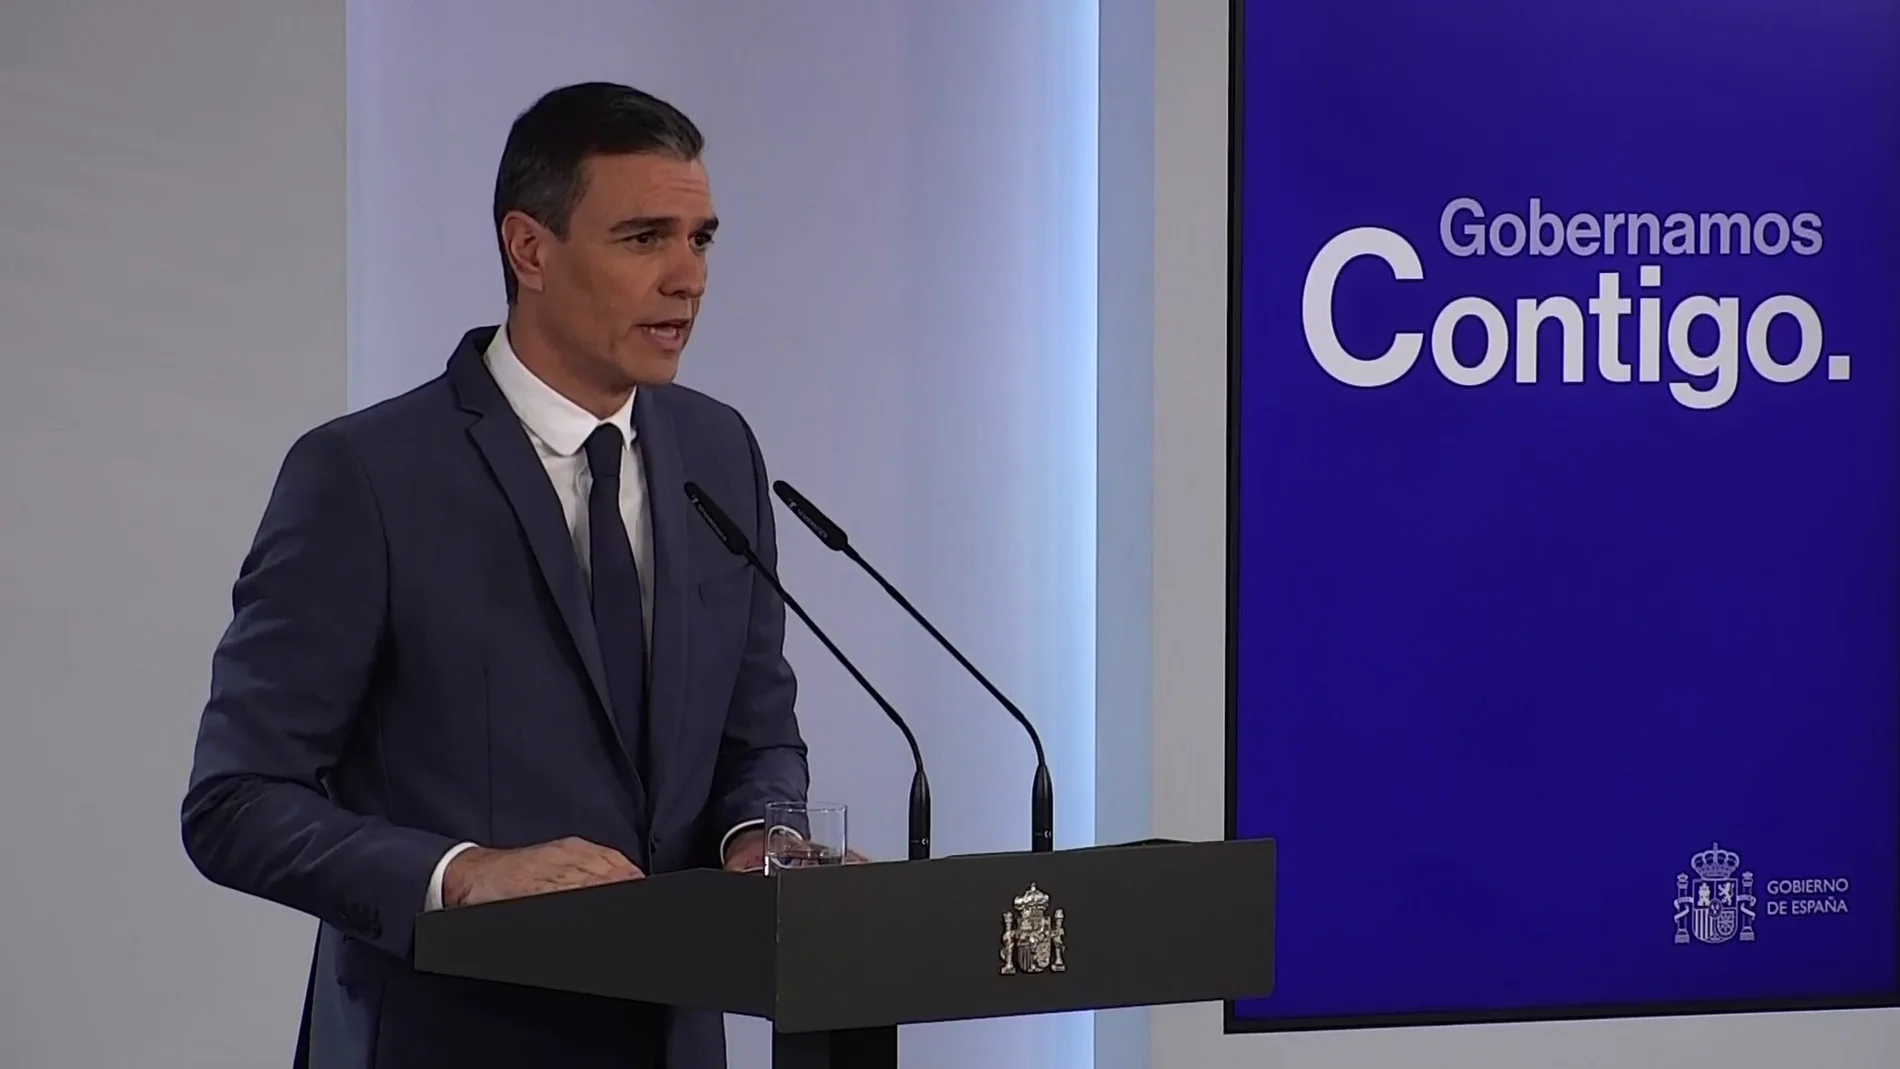 Declaración institucional de Pedro Sánchez, vídeo completo 